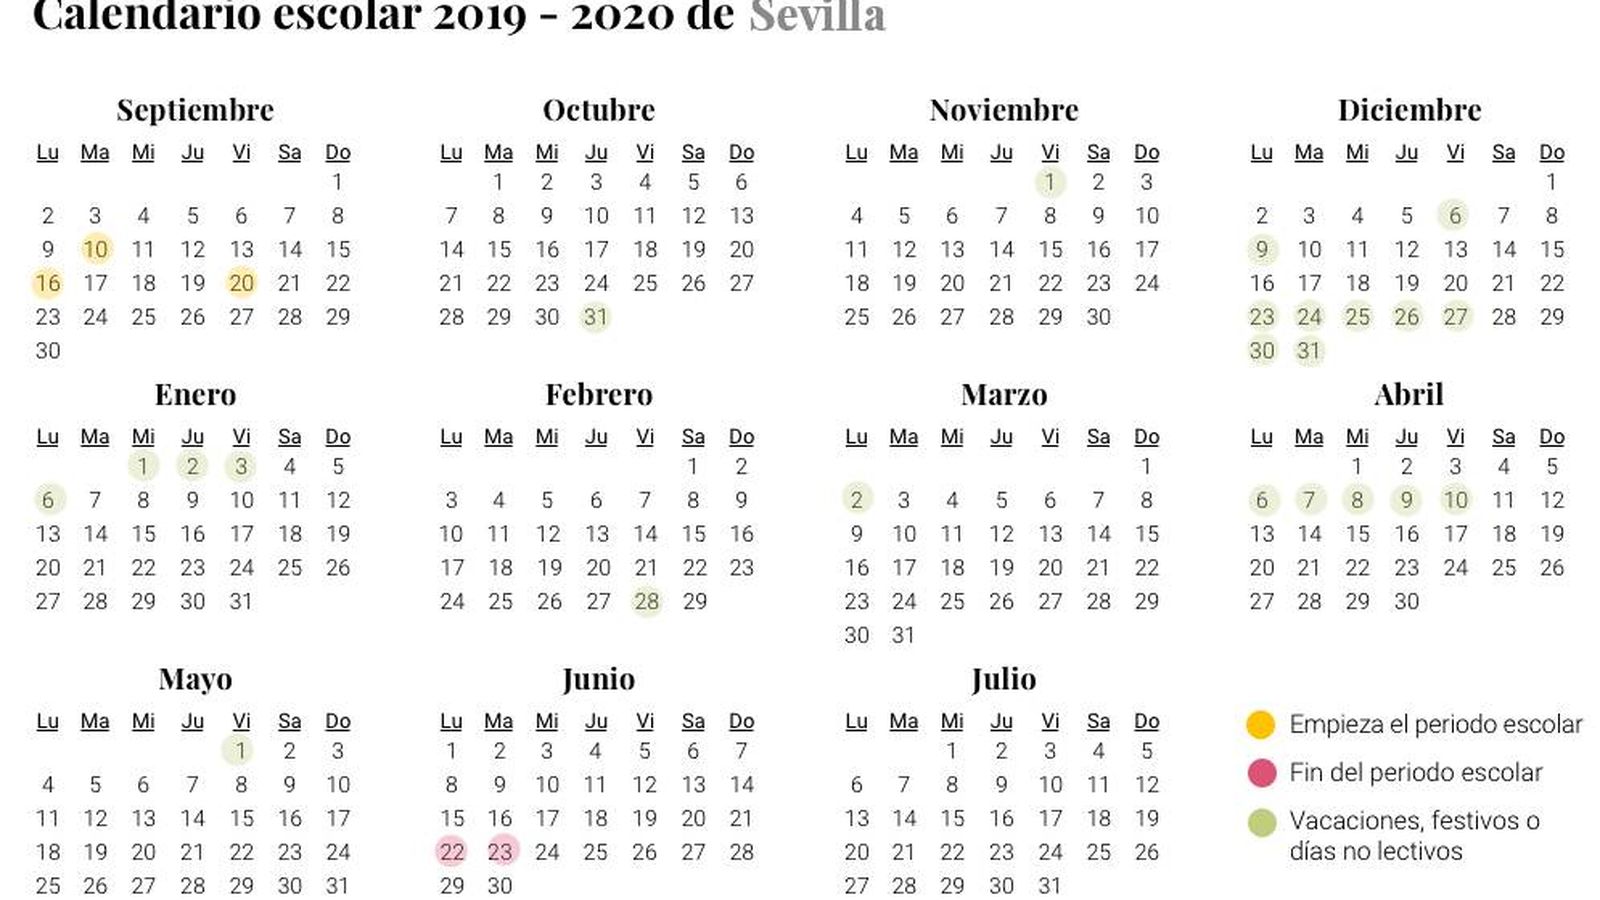 Foto: Calendario escolar 2019-2020 Sevilla (El Confidencial)